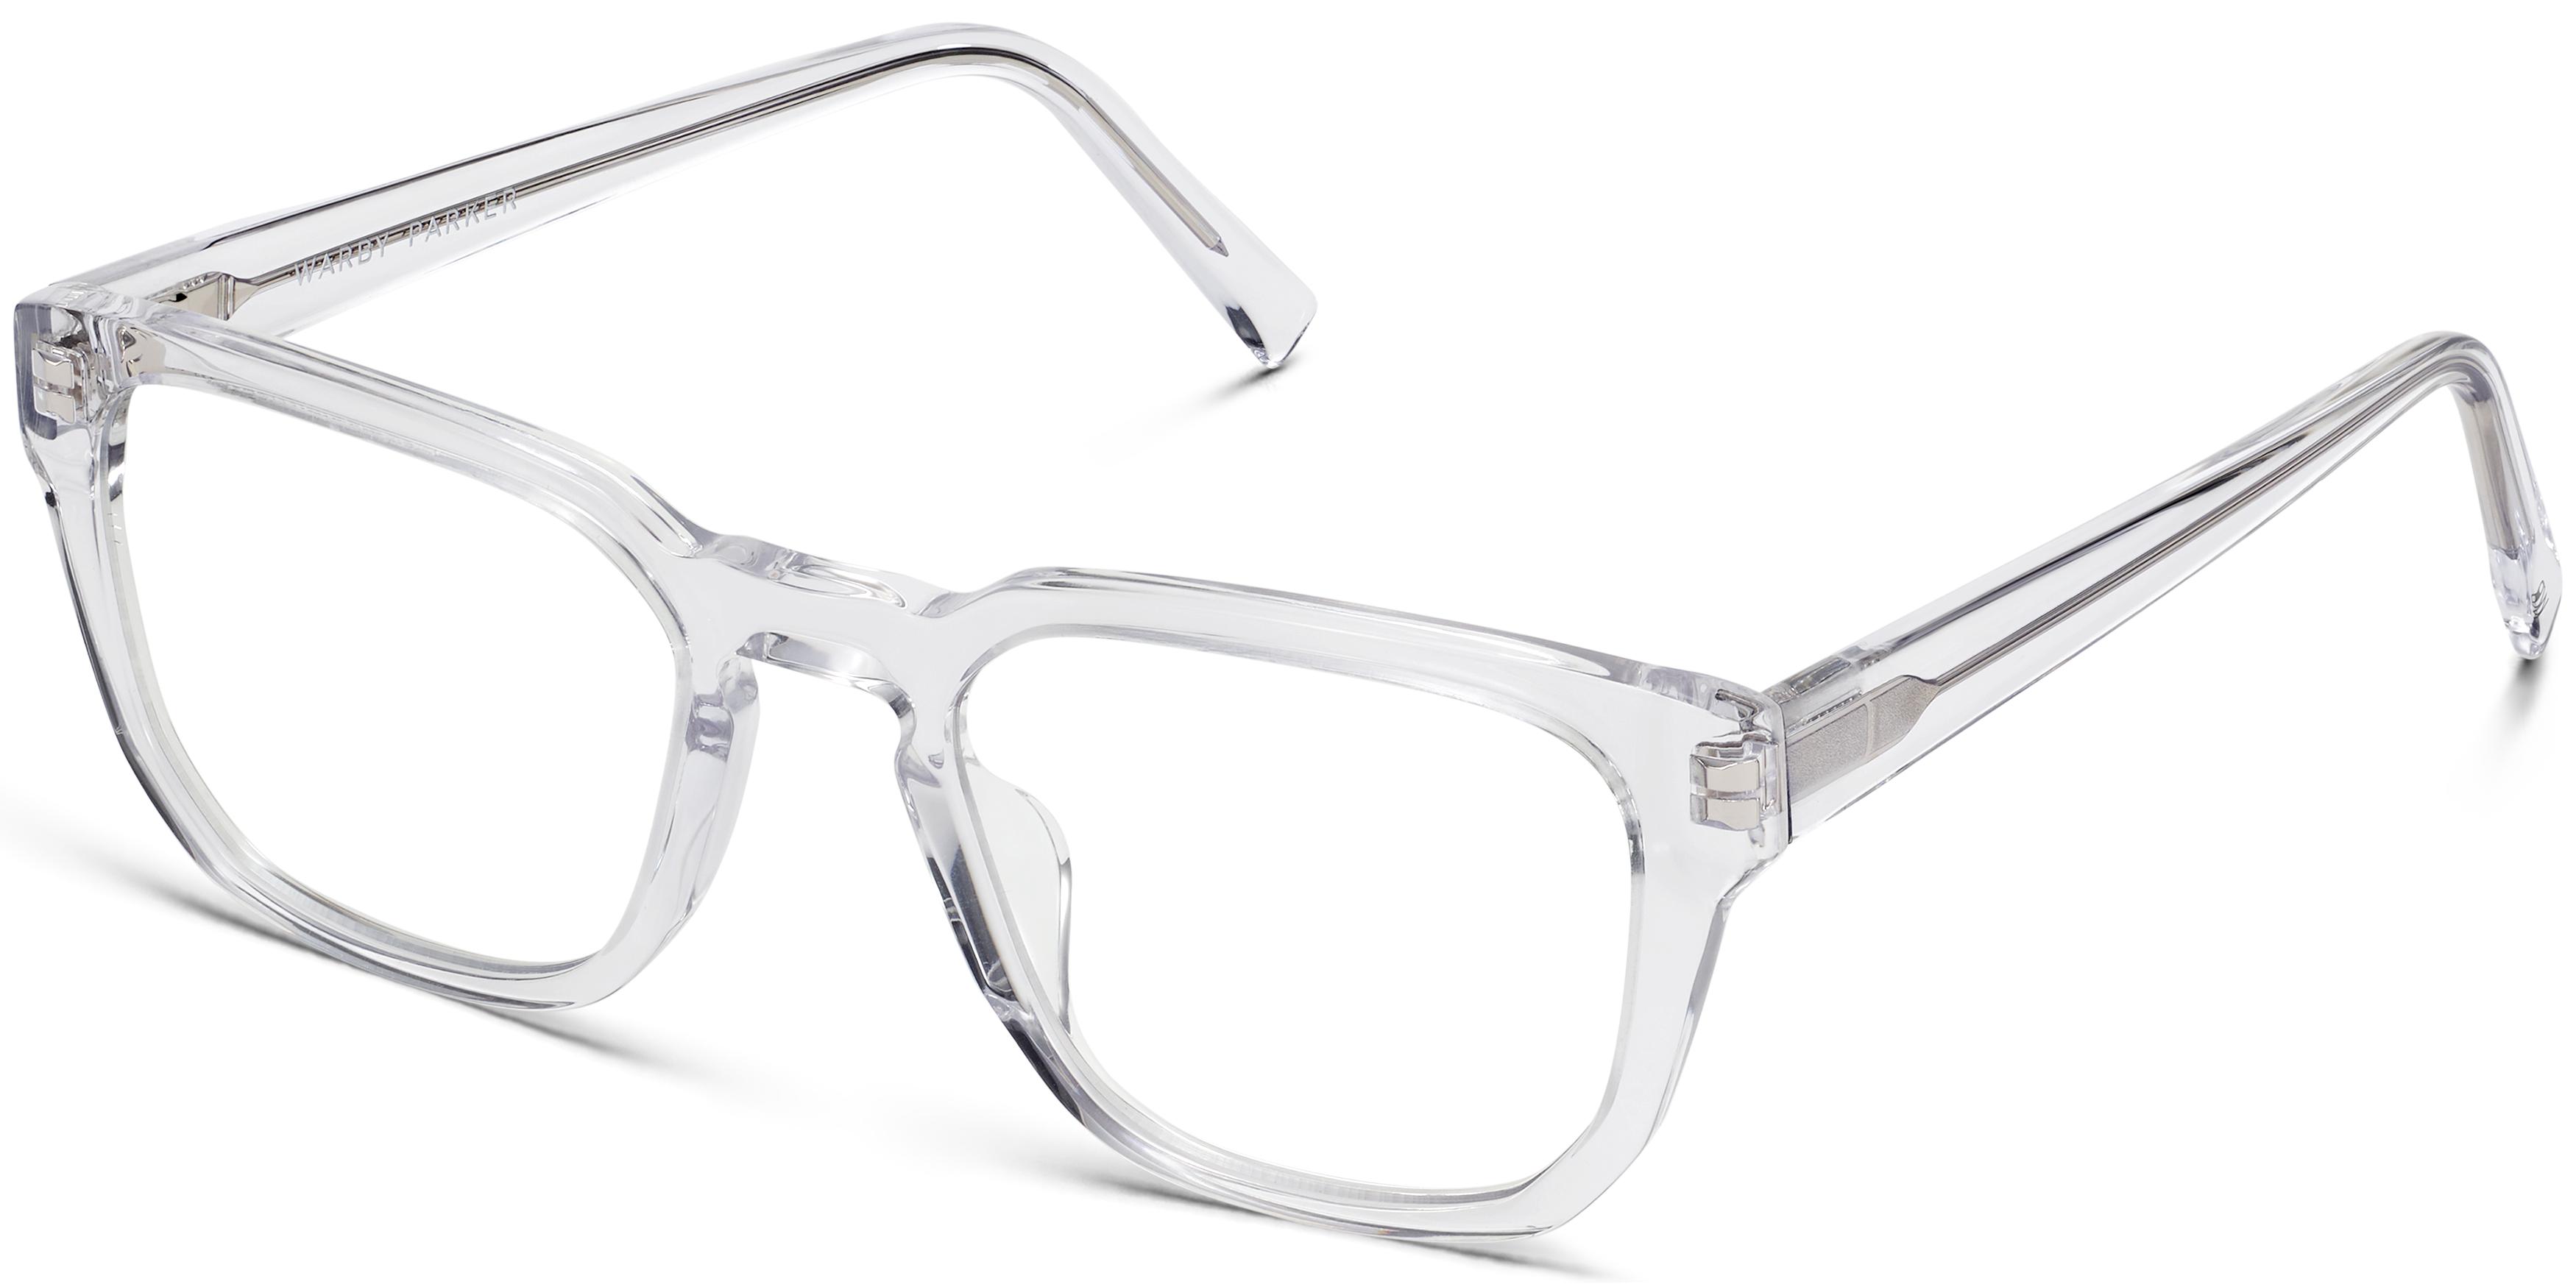 Dominic Eyeglasses in Crystal